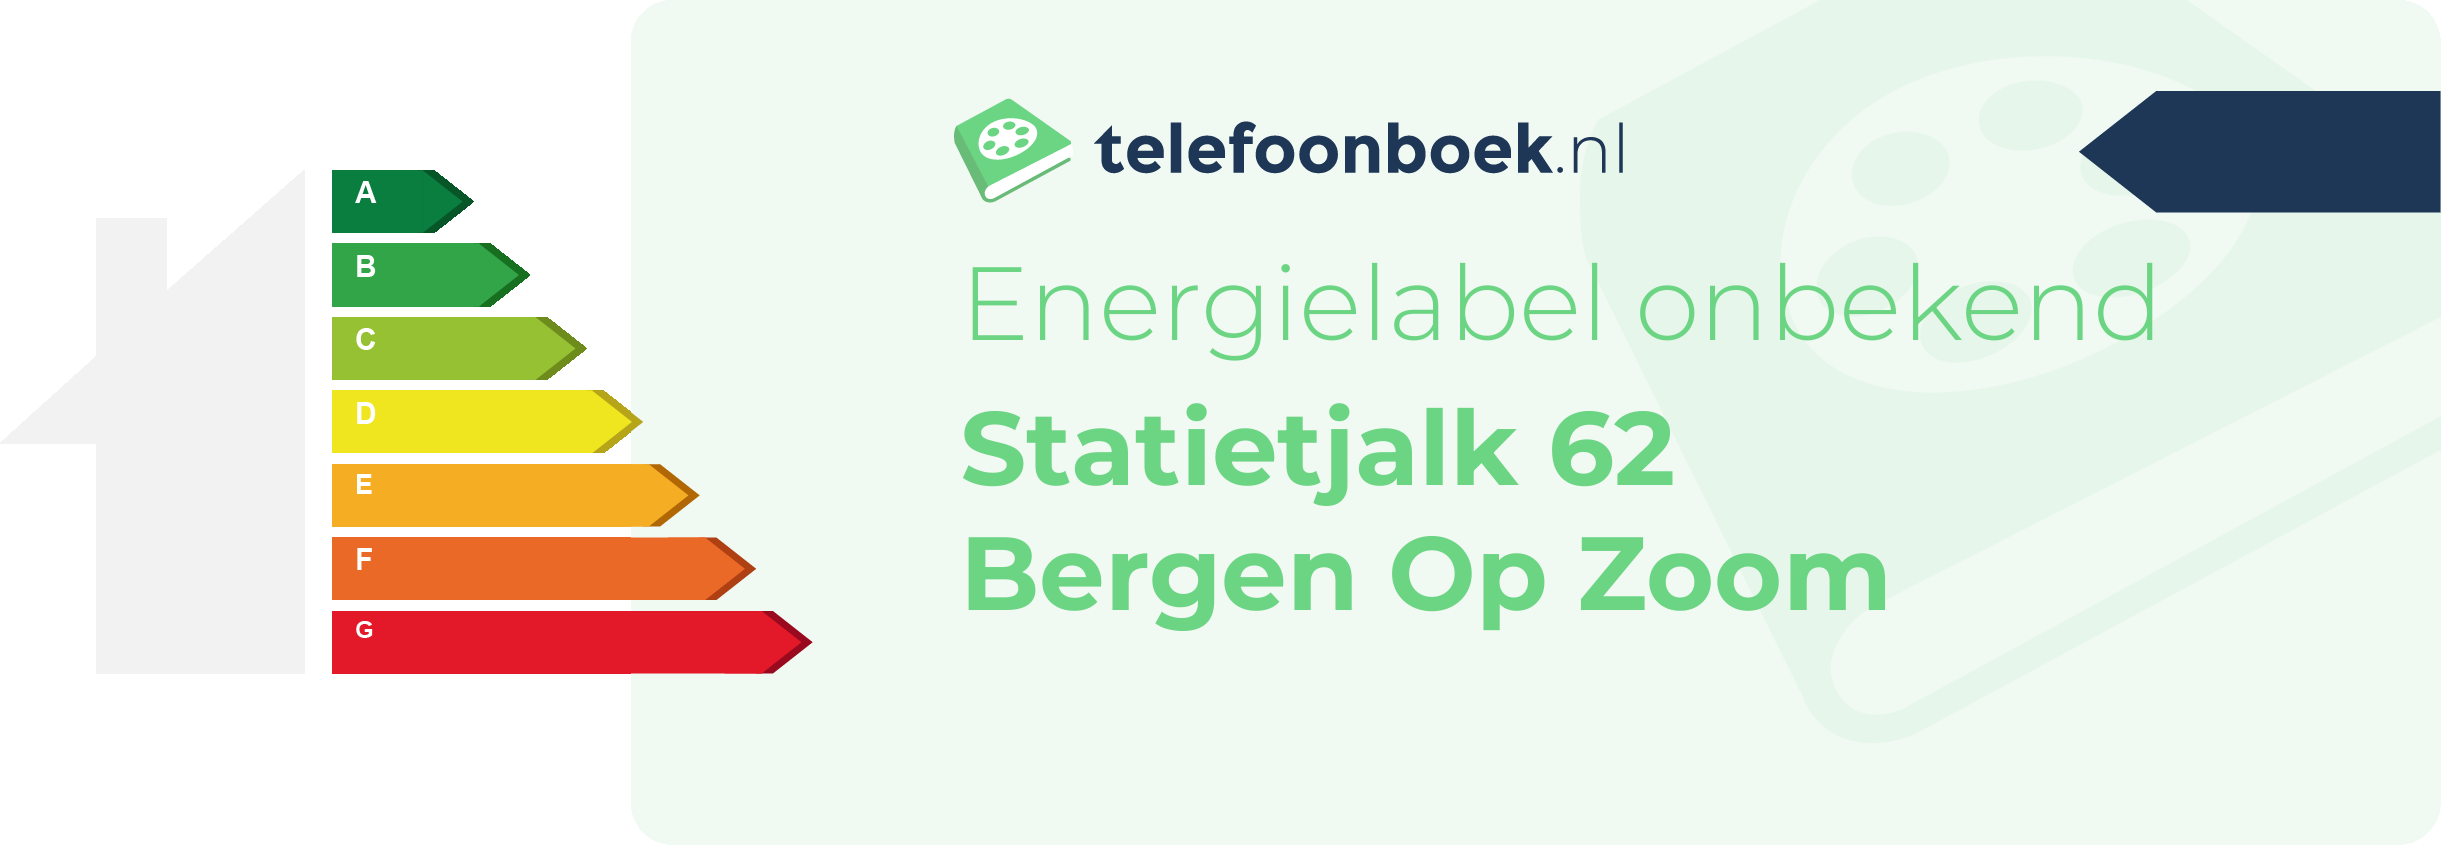 Energielabel Statietjalk 62 Bergen Op Zoom